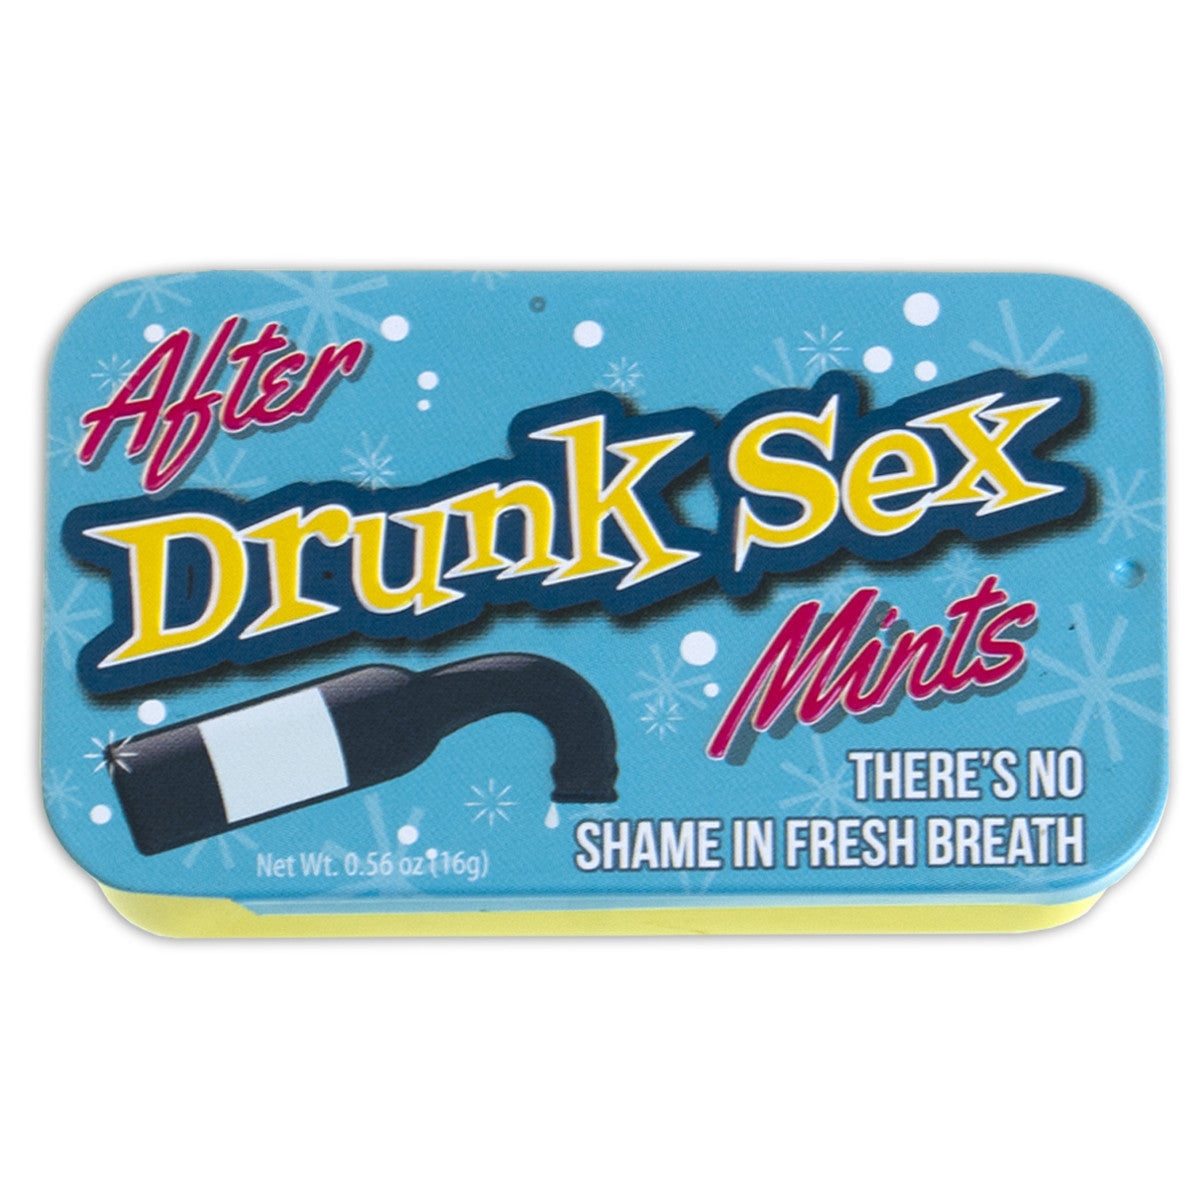 After Drunk Sex - MTR2348F